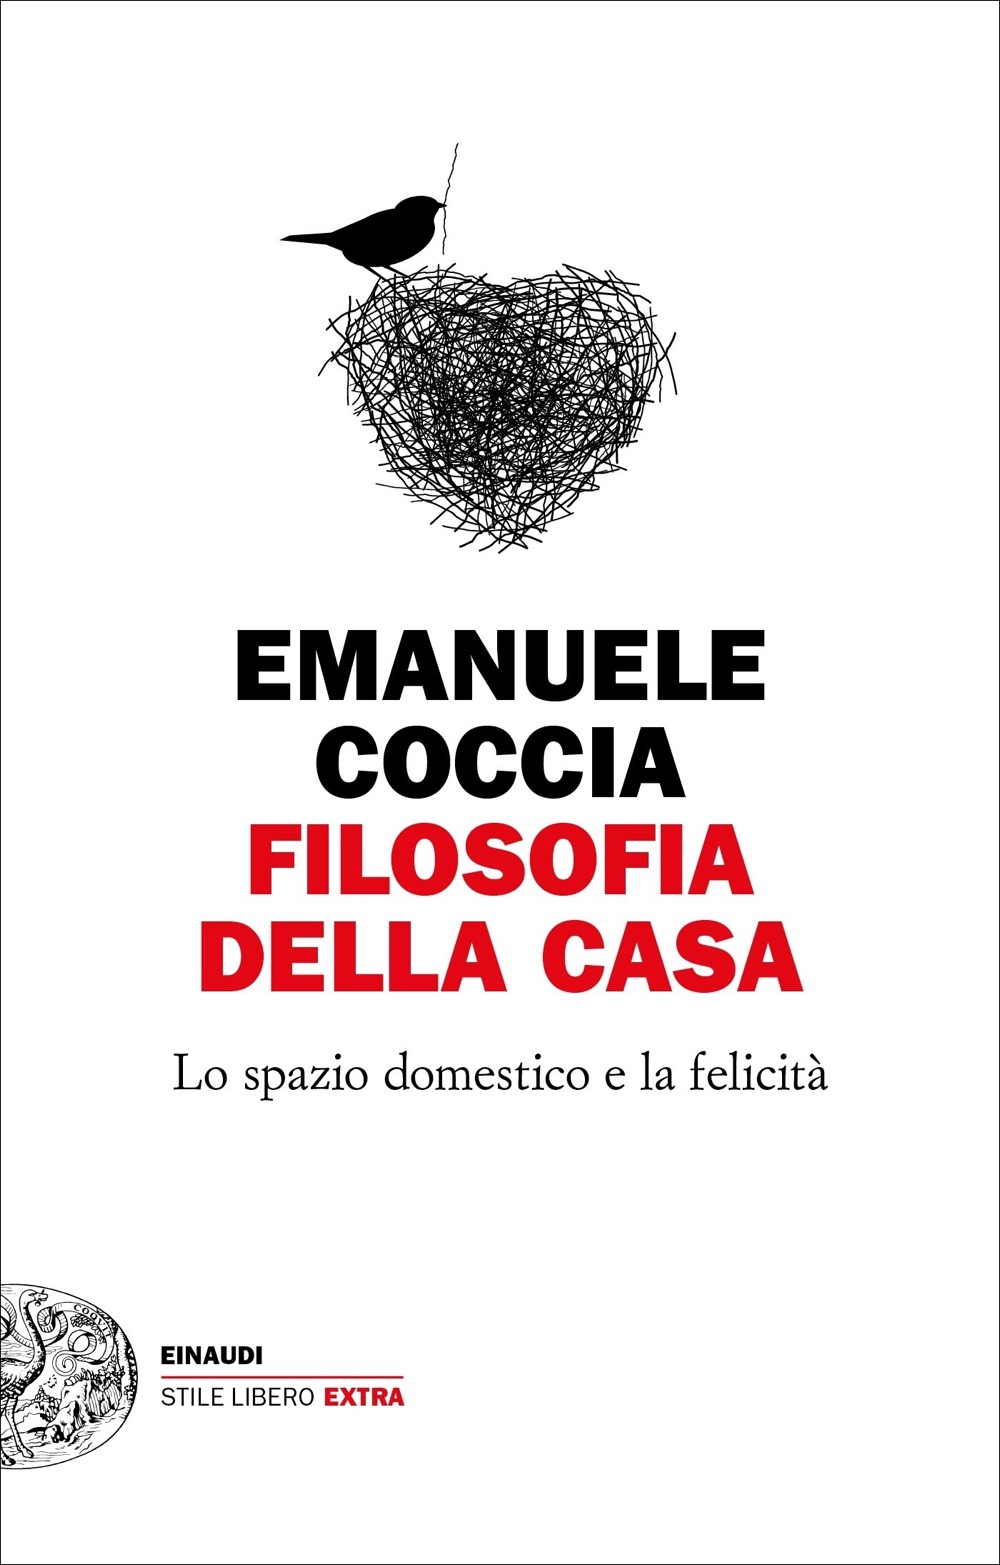 Filosofia della casa, Emanuele Coccia. Giulio Einaudi Editore - eBook